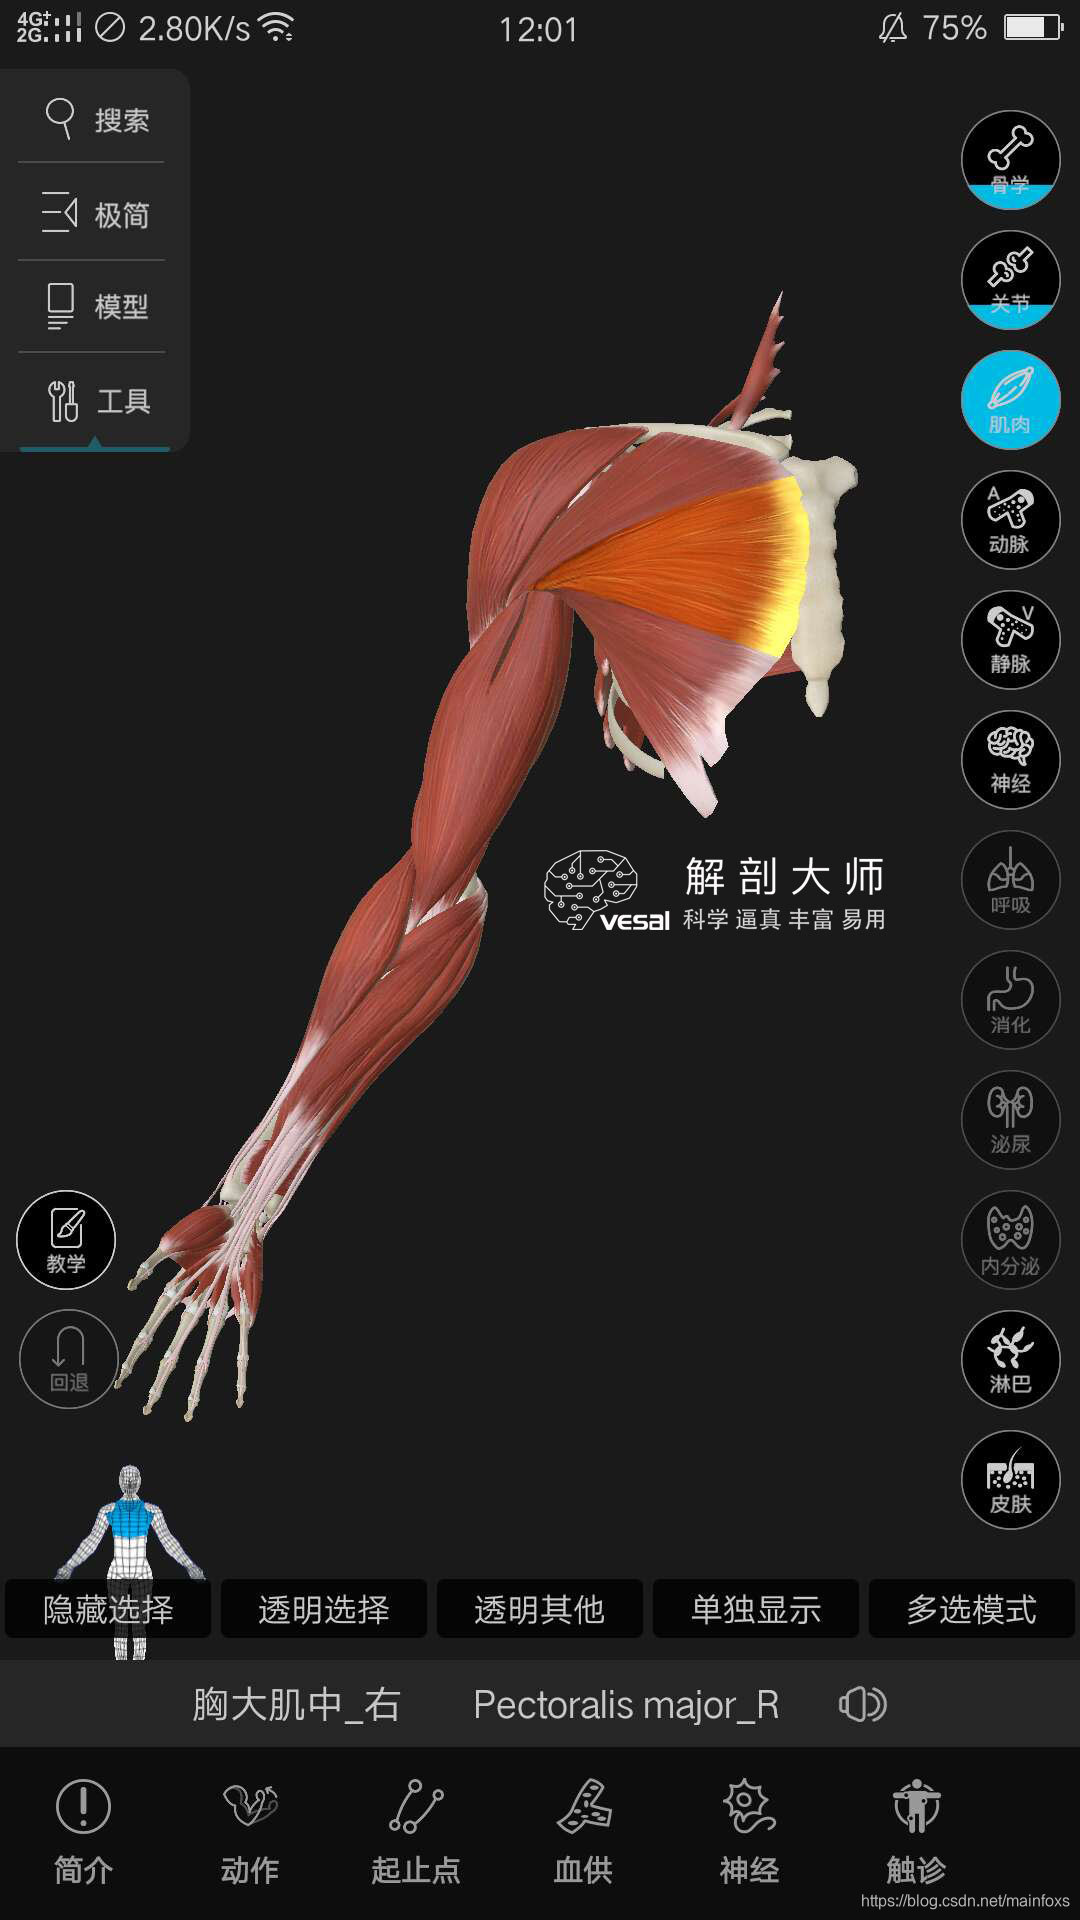 高清3D人体解剖图谱